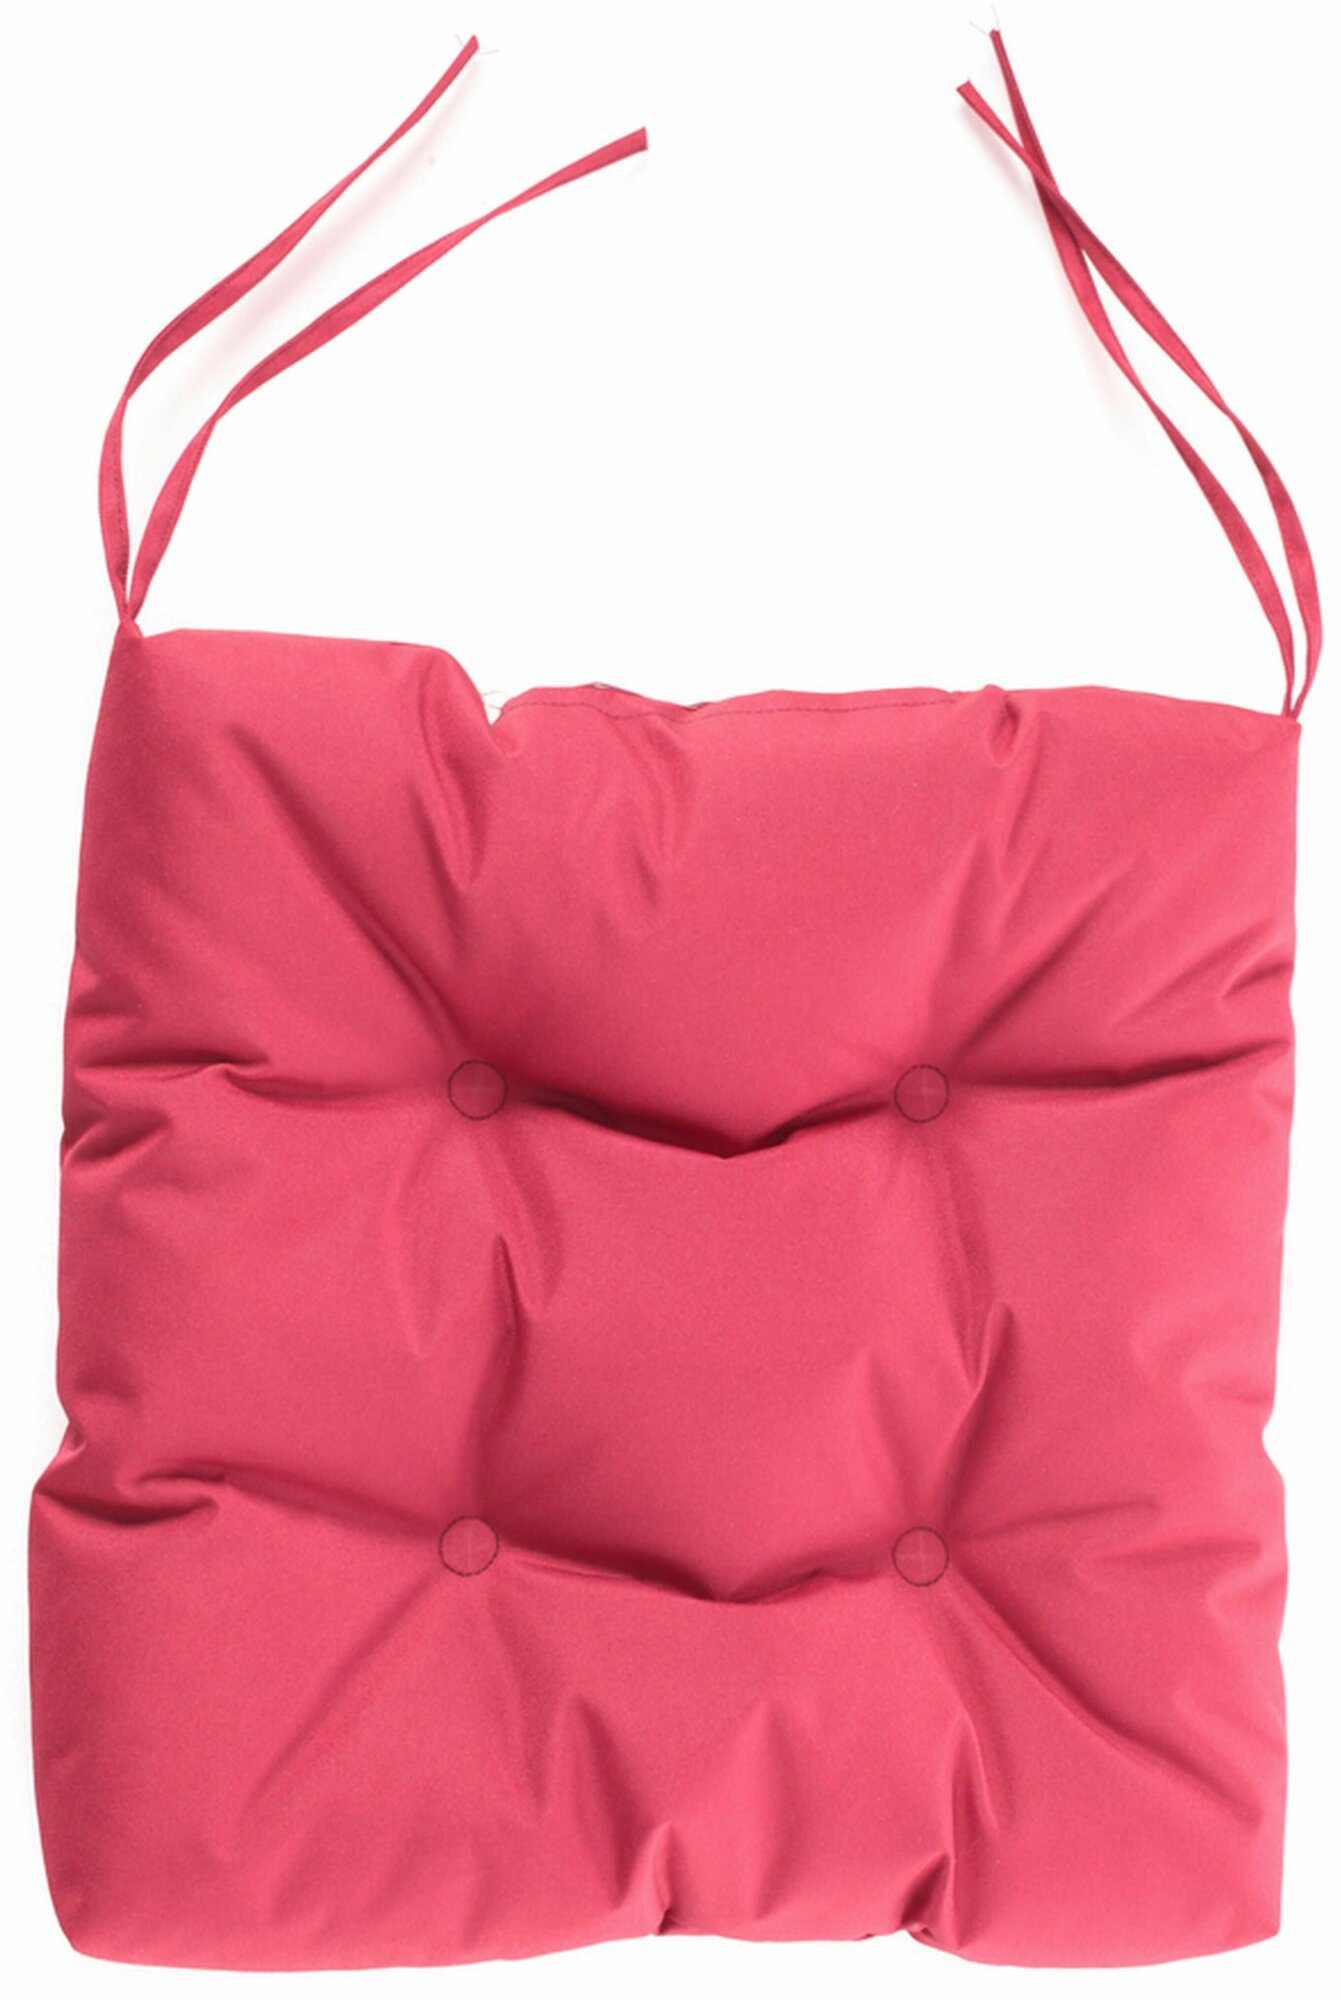 Подушка для стула Туба-Дуба Дачные Посиделки ПДП001 40x40 см цвет вишнёвый